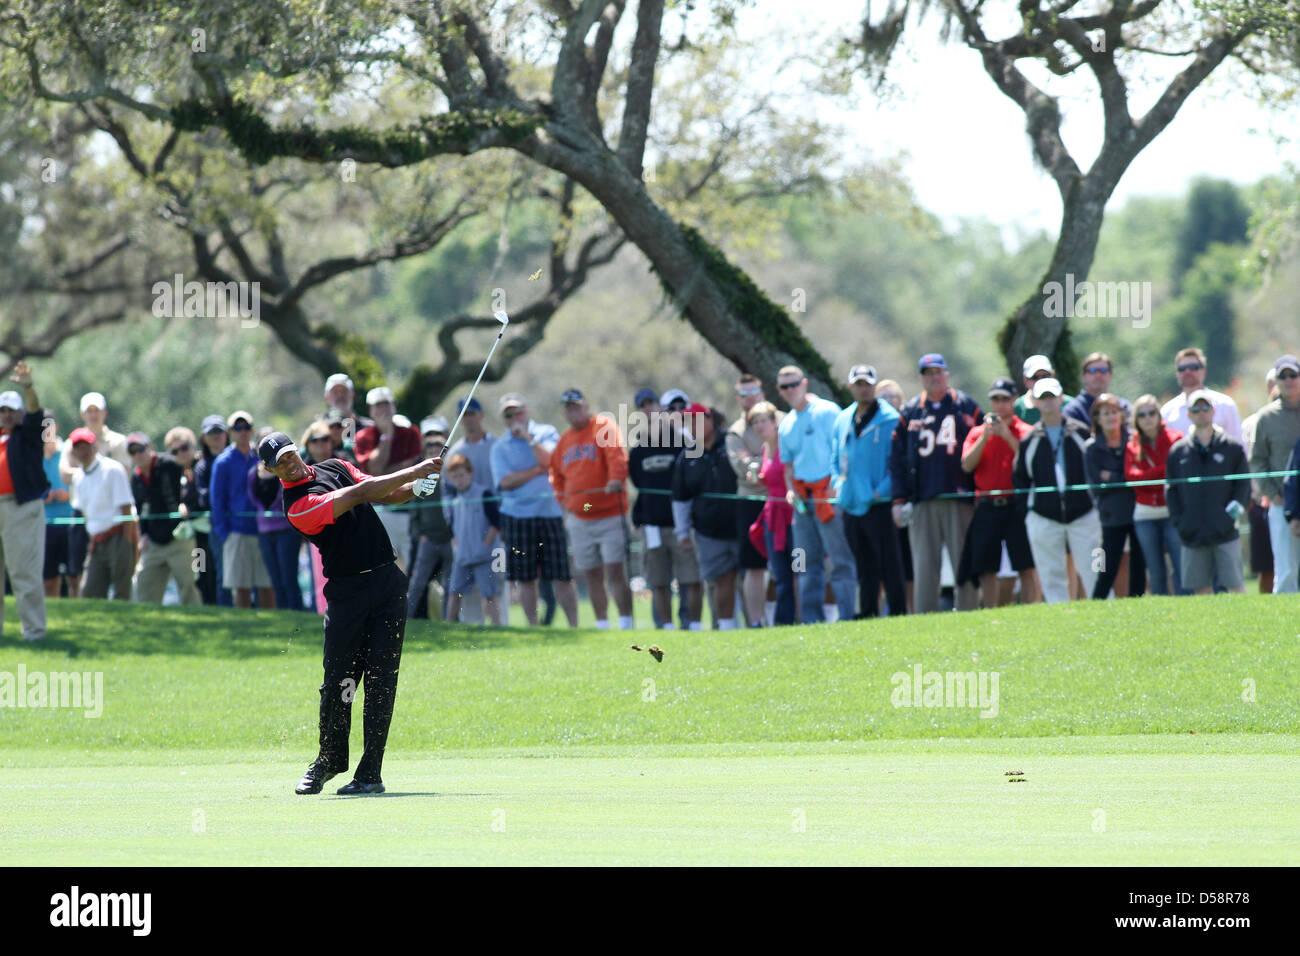 Tiger Woods (USA), le 25 mars 2013 - Golf : Tiger Woods de l'United States hits son troisième tir sur le 12e trou lors de la ronde finale de l'Arnold Palmer Invitational au Bay Hill Club and Lodge dans la région de Bay Hill, près d'Orlando, Florida, United States. (Photo par Yasuhiro JJ Tanabe/AFLO) Banque D'Images